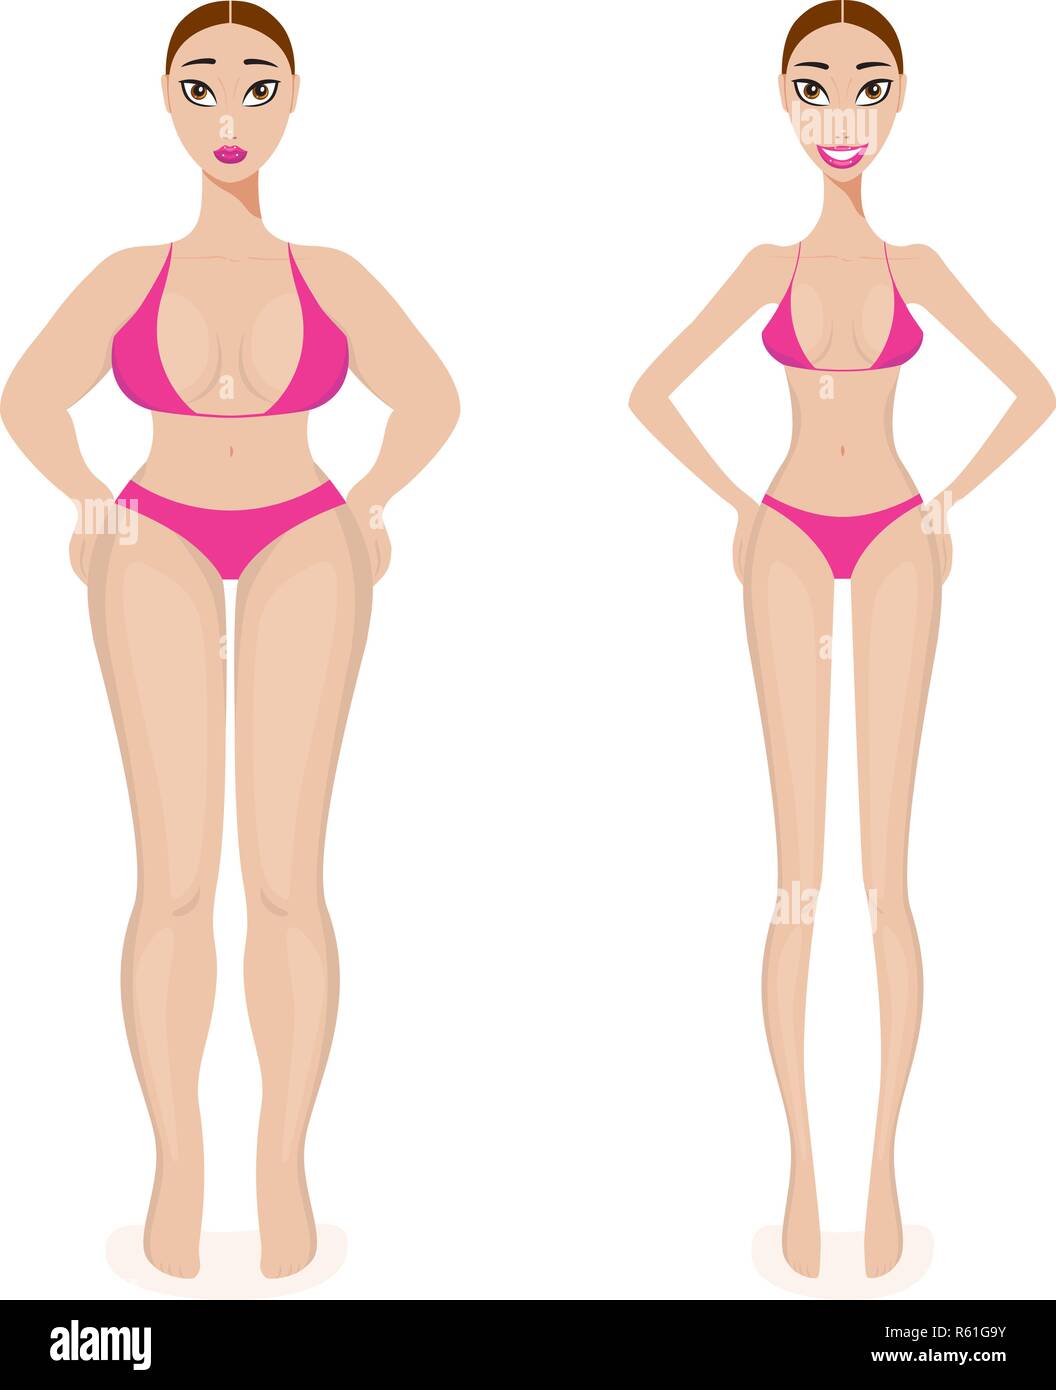 Frau Gewichtsverlust Erfolg Vor und Nach der Adipositas schlanken Körper Vector Illustration Stock Vektor